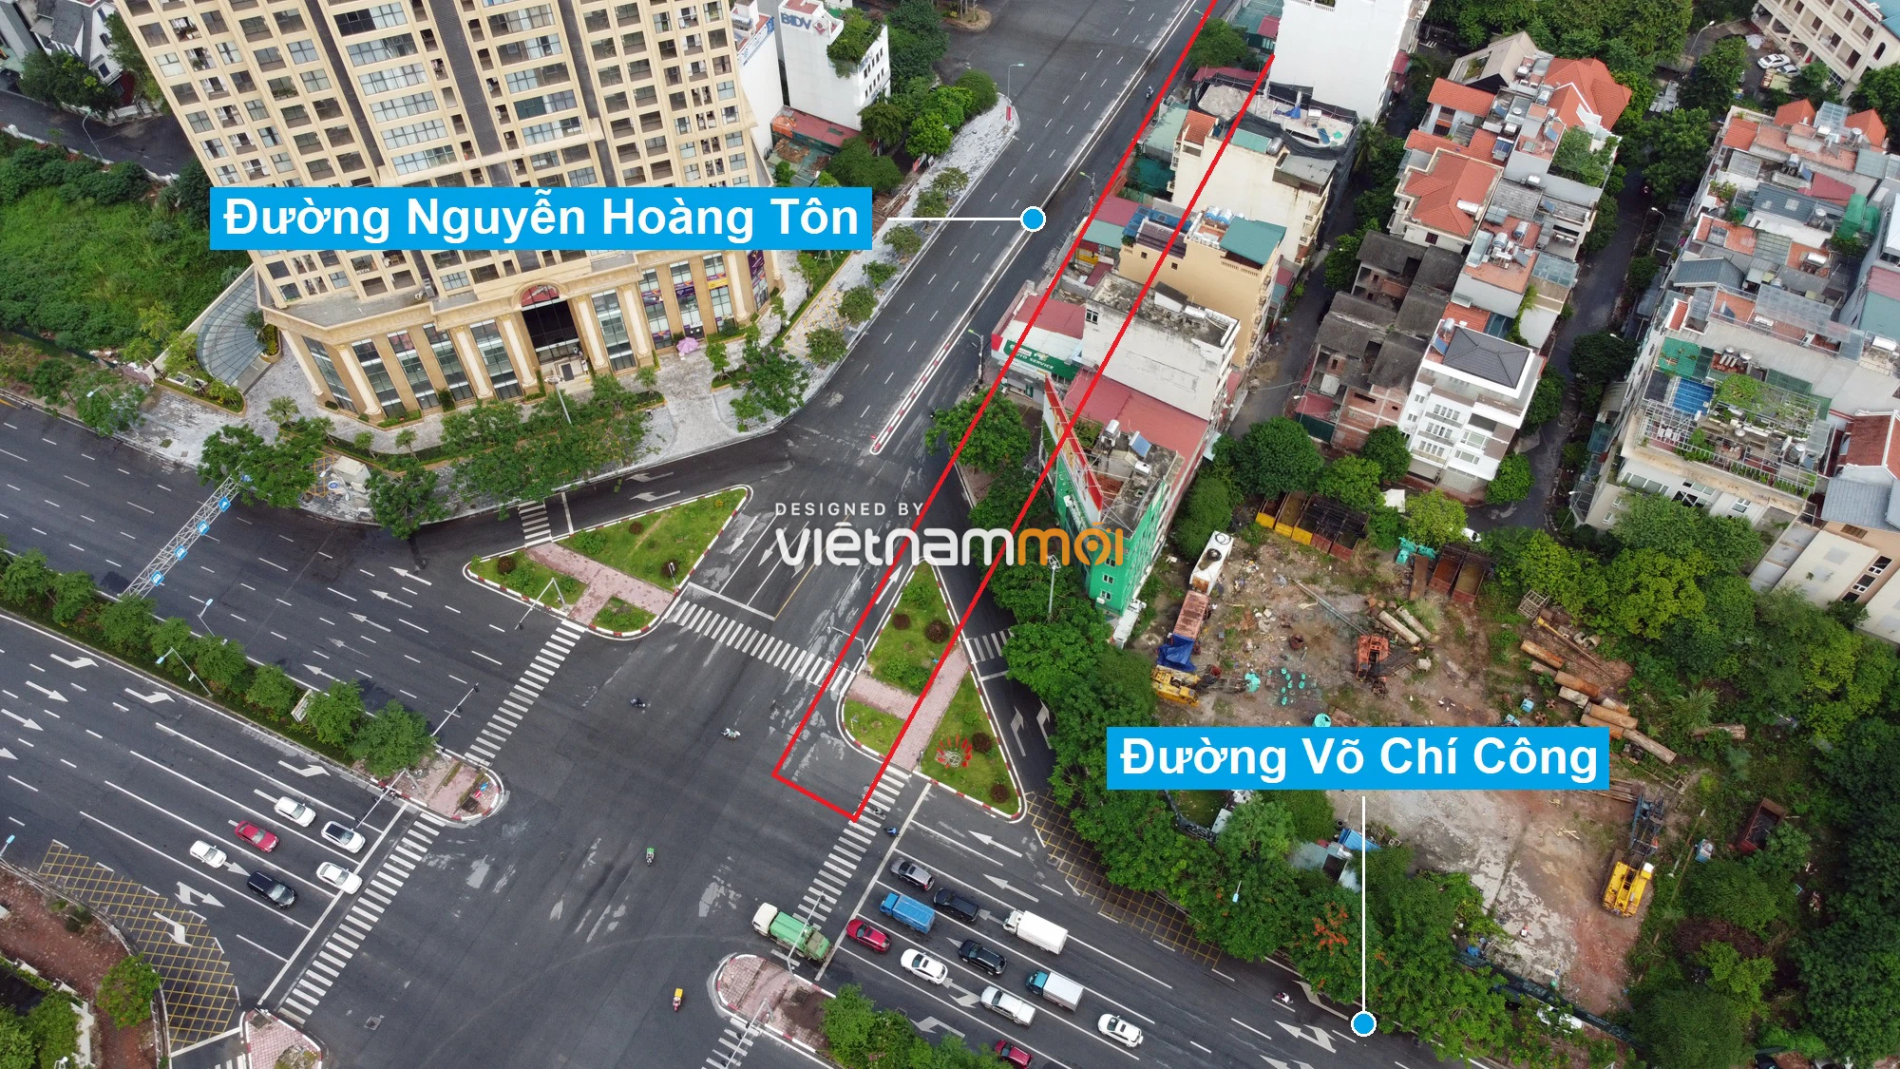 Những khu đất sắp thu hồi để mở đường ở quận Tây Hồ, Hà Nội (phần 1) - Ảnh 3.